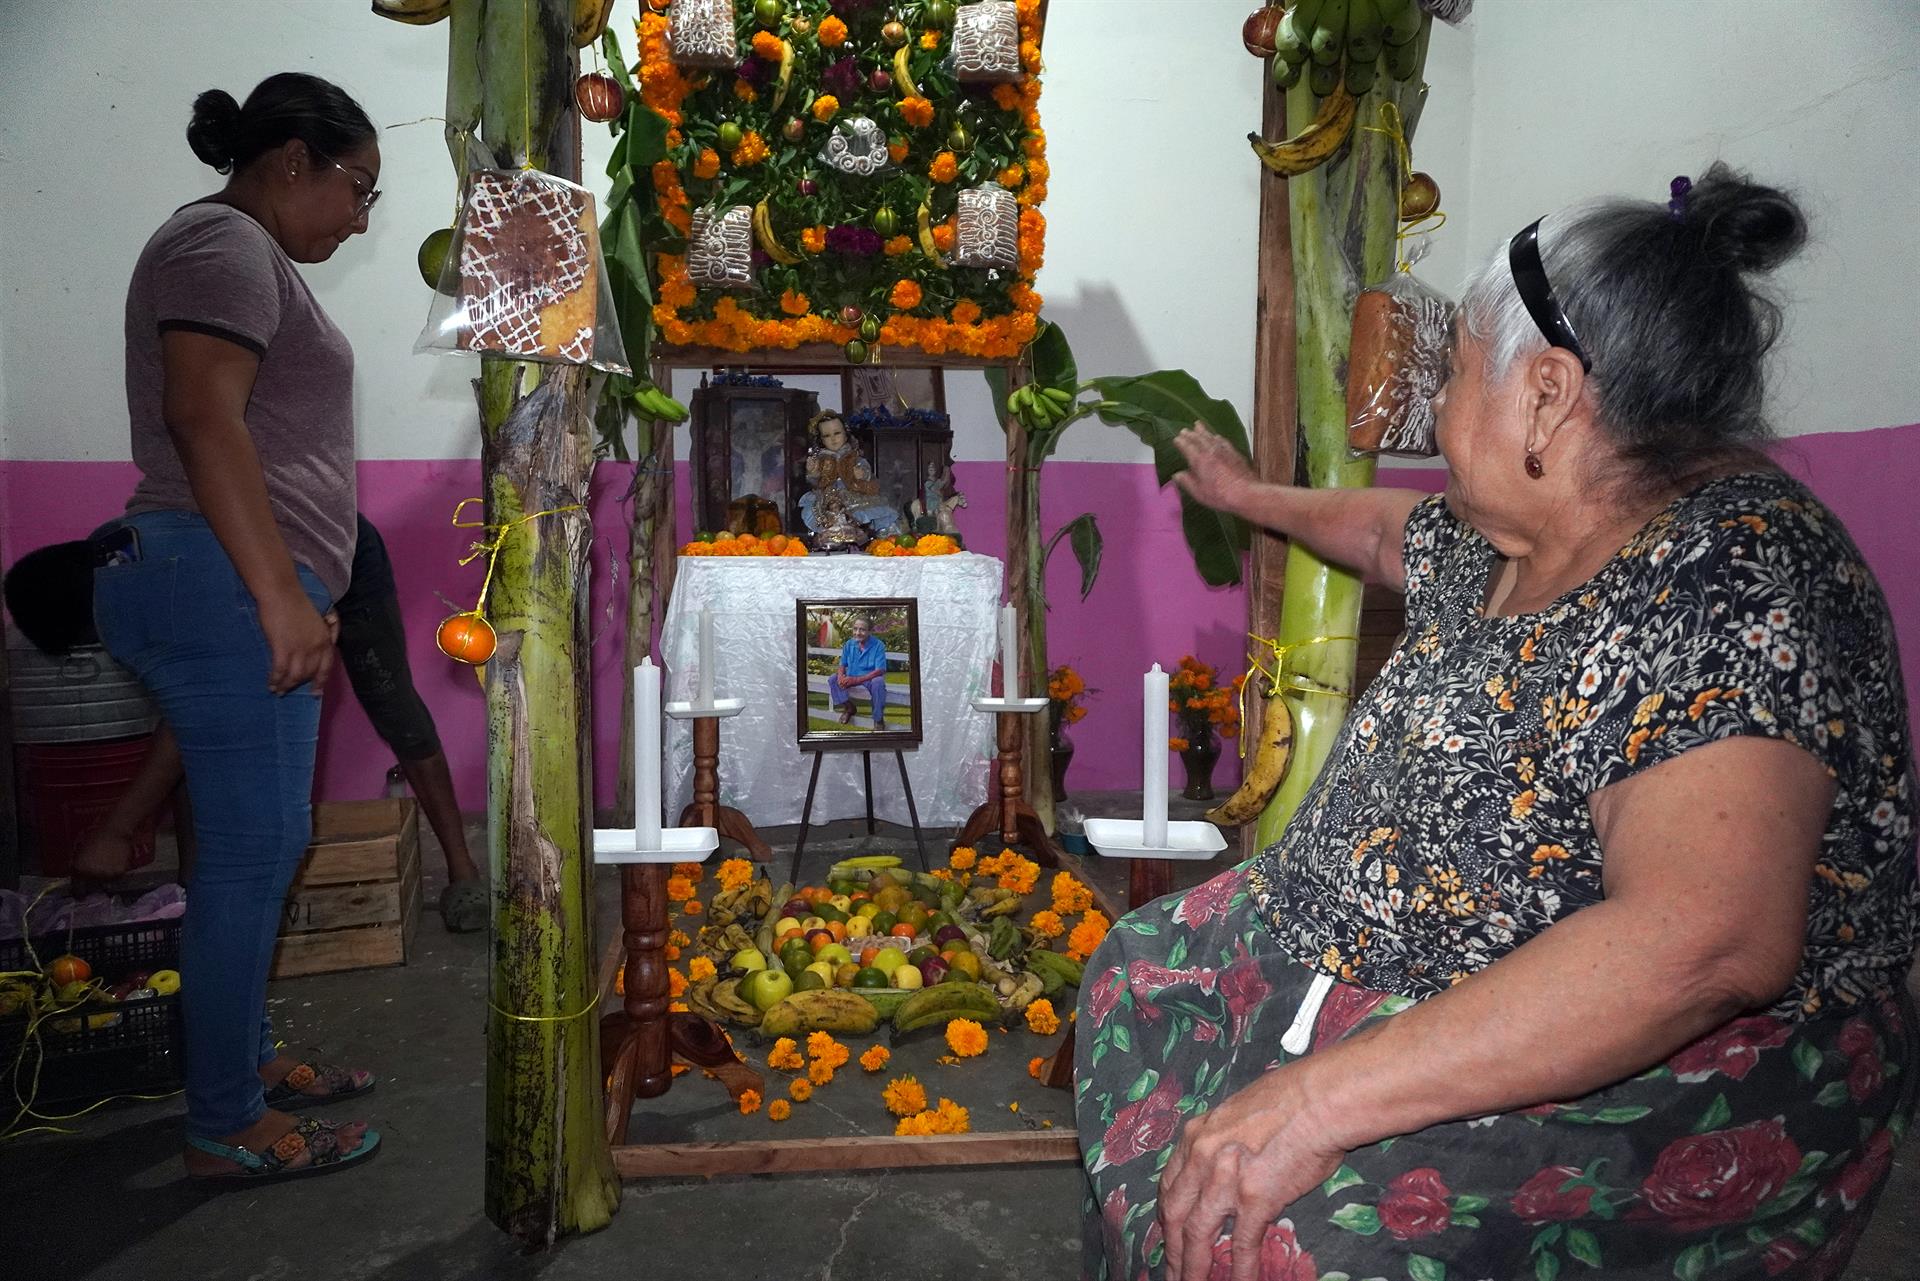 Personas arreglan hoy una ofrenda dedicada a sus familiares fallecidos, en el municipio de Juchitán, estado de Oaxaca (México). EFE/Jesús Méndez